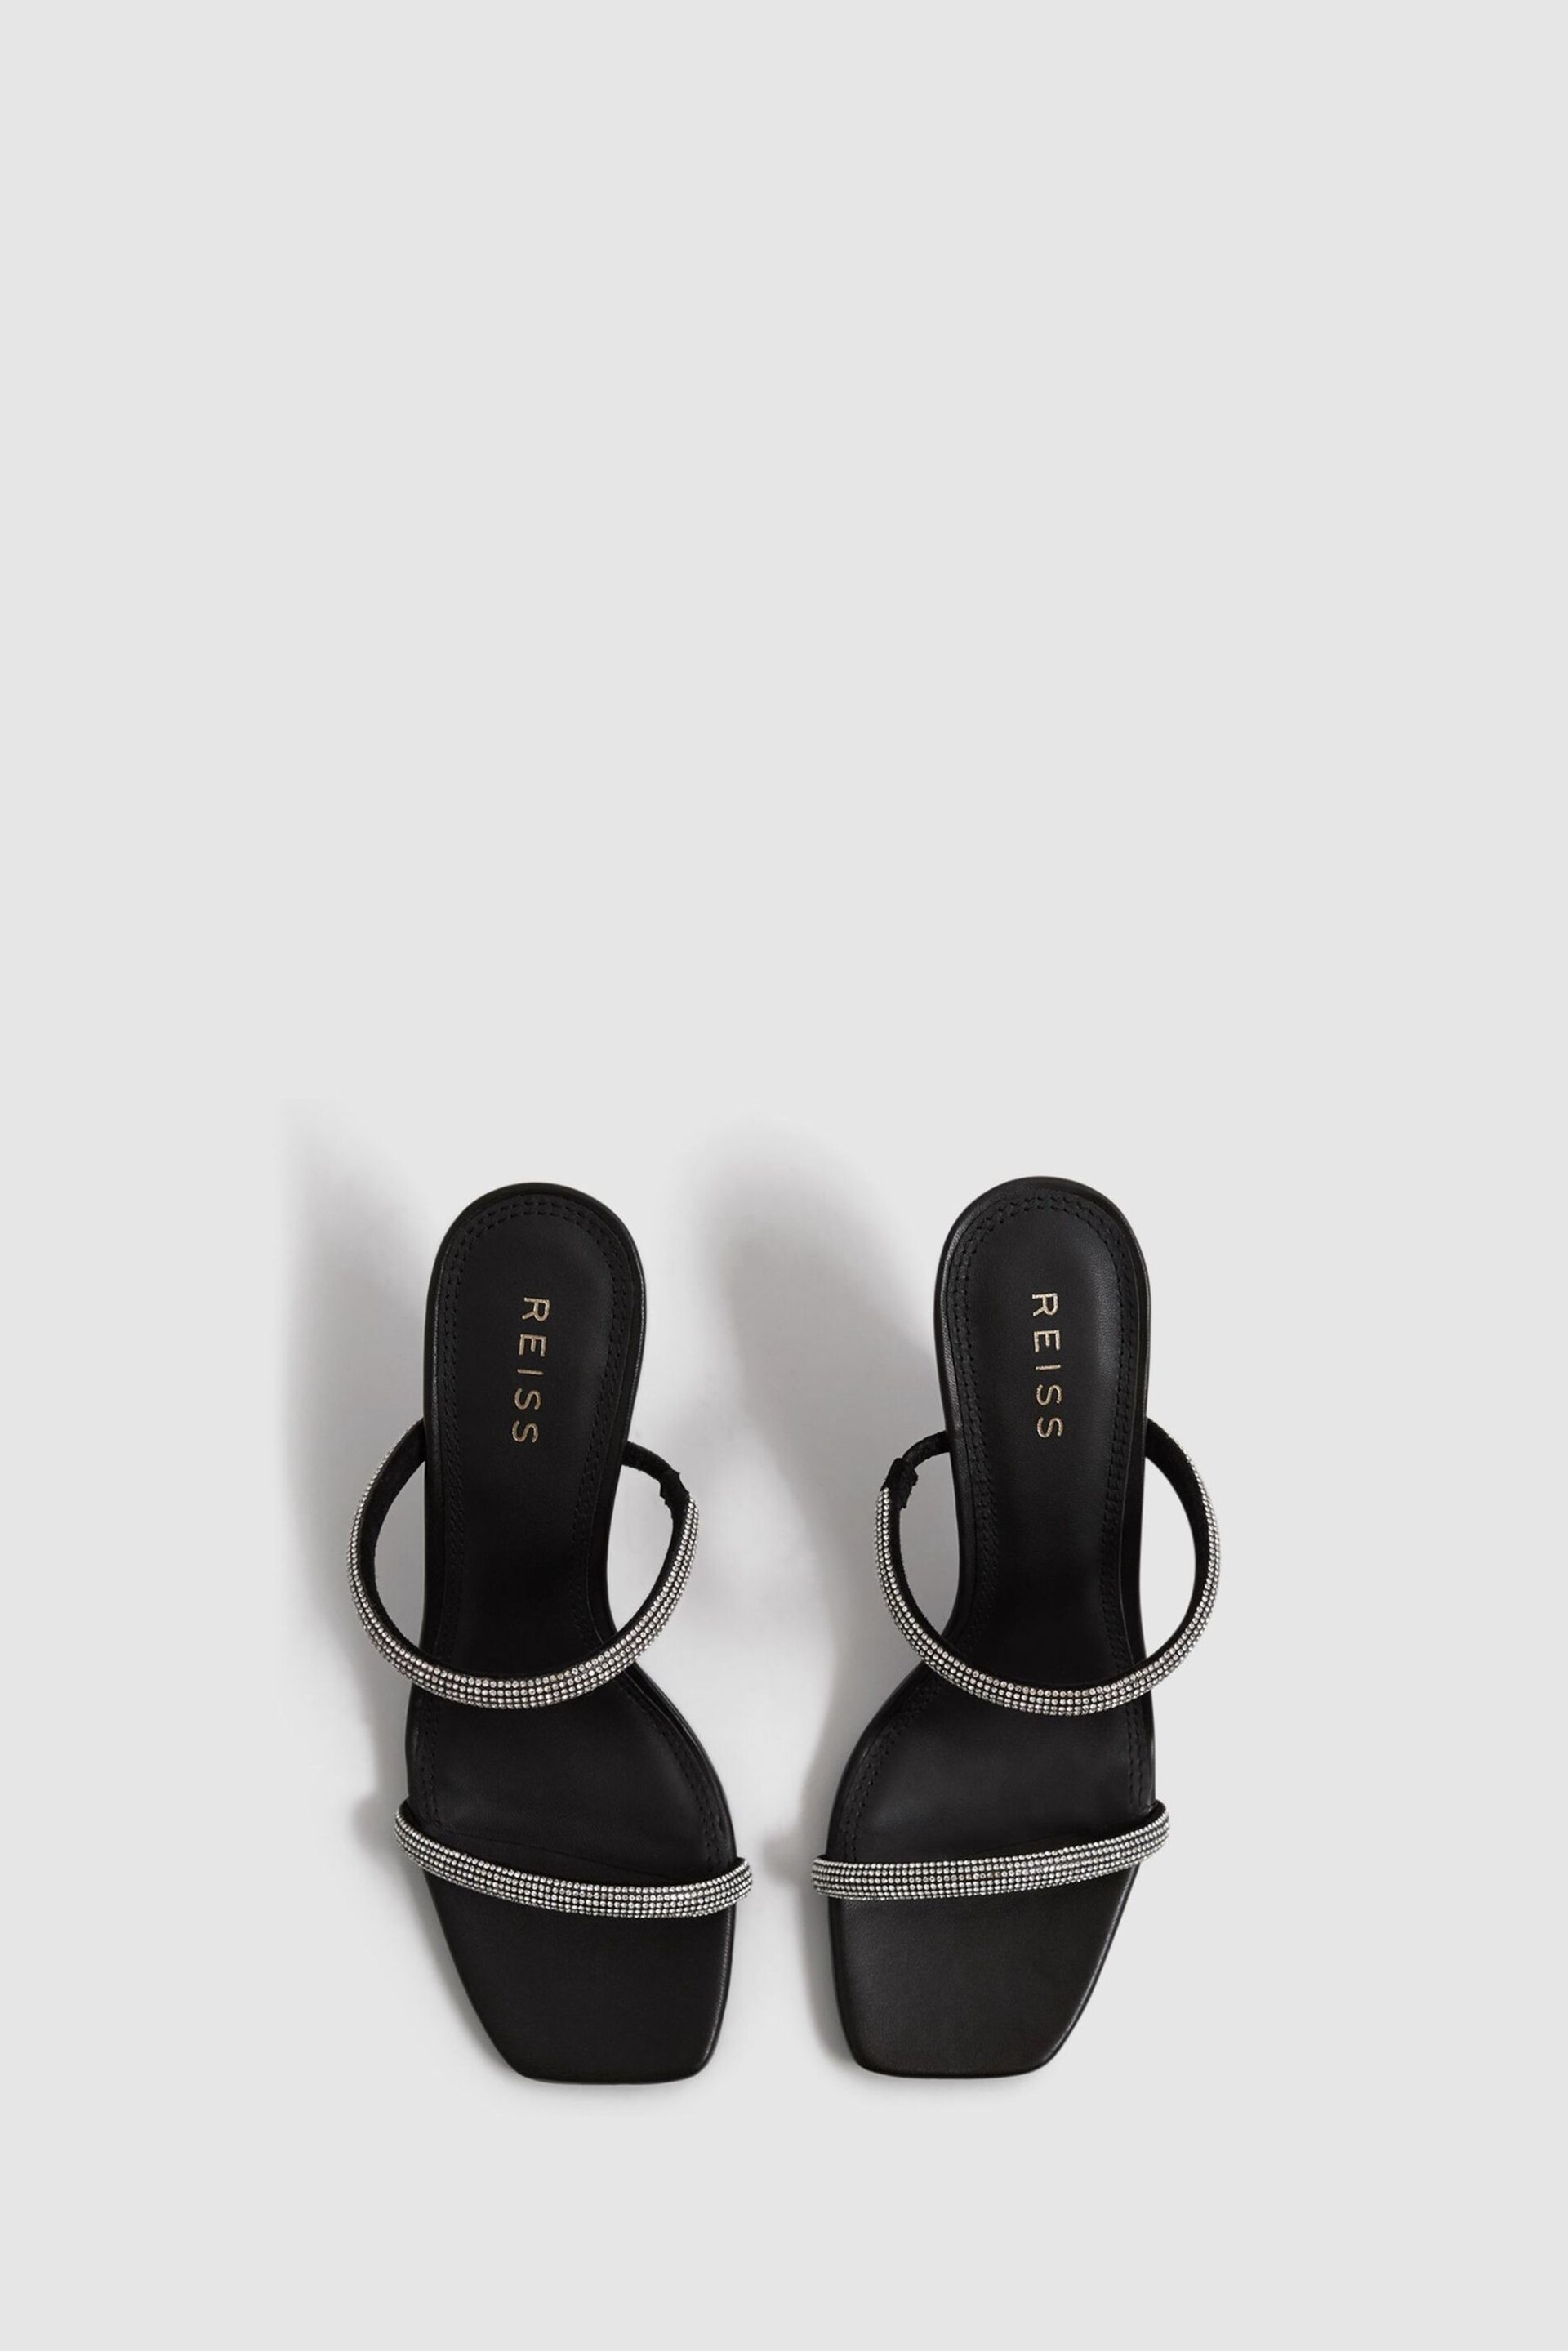 Reiss Black Cai Crystal Mid Heel Sandals - Image 3 of 6